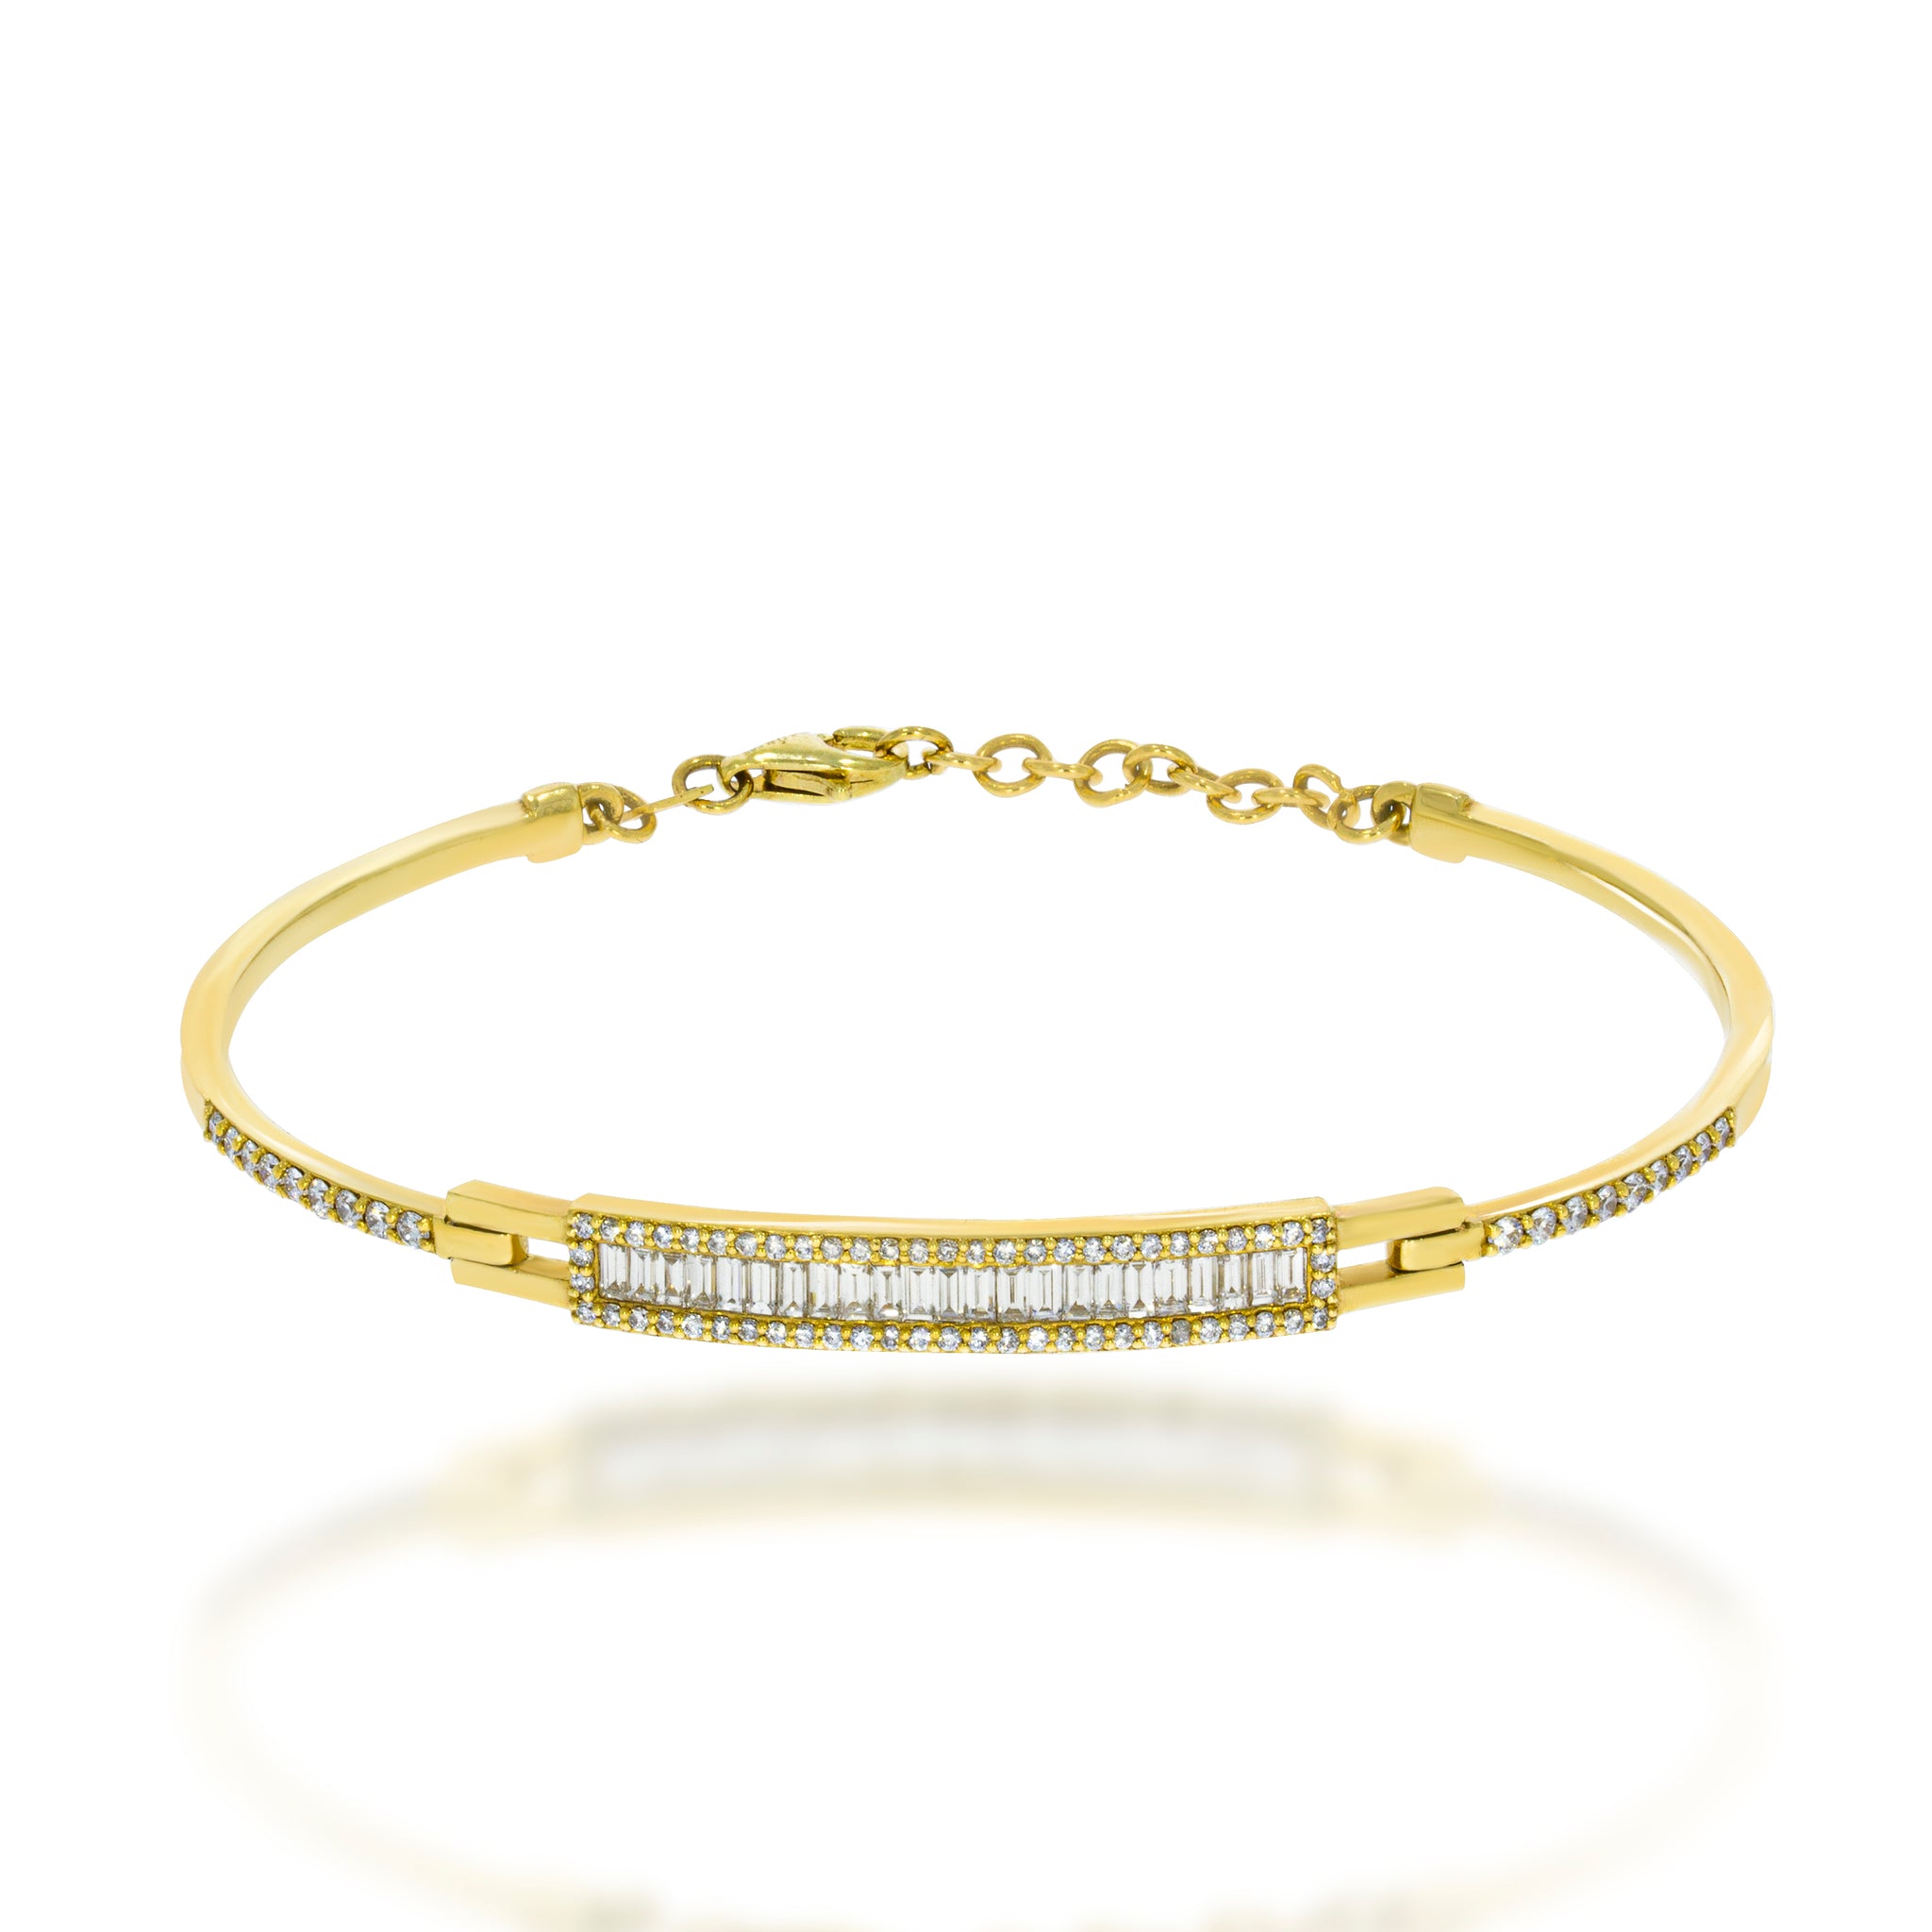 14 Karat Gold Bangle Bracelet Containing 292 Round Cut Diamonds Weighing  0.69-0.79 Carats | XIV Karats LTD